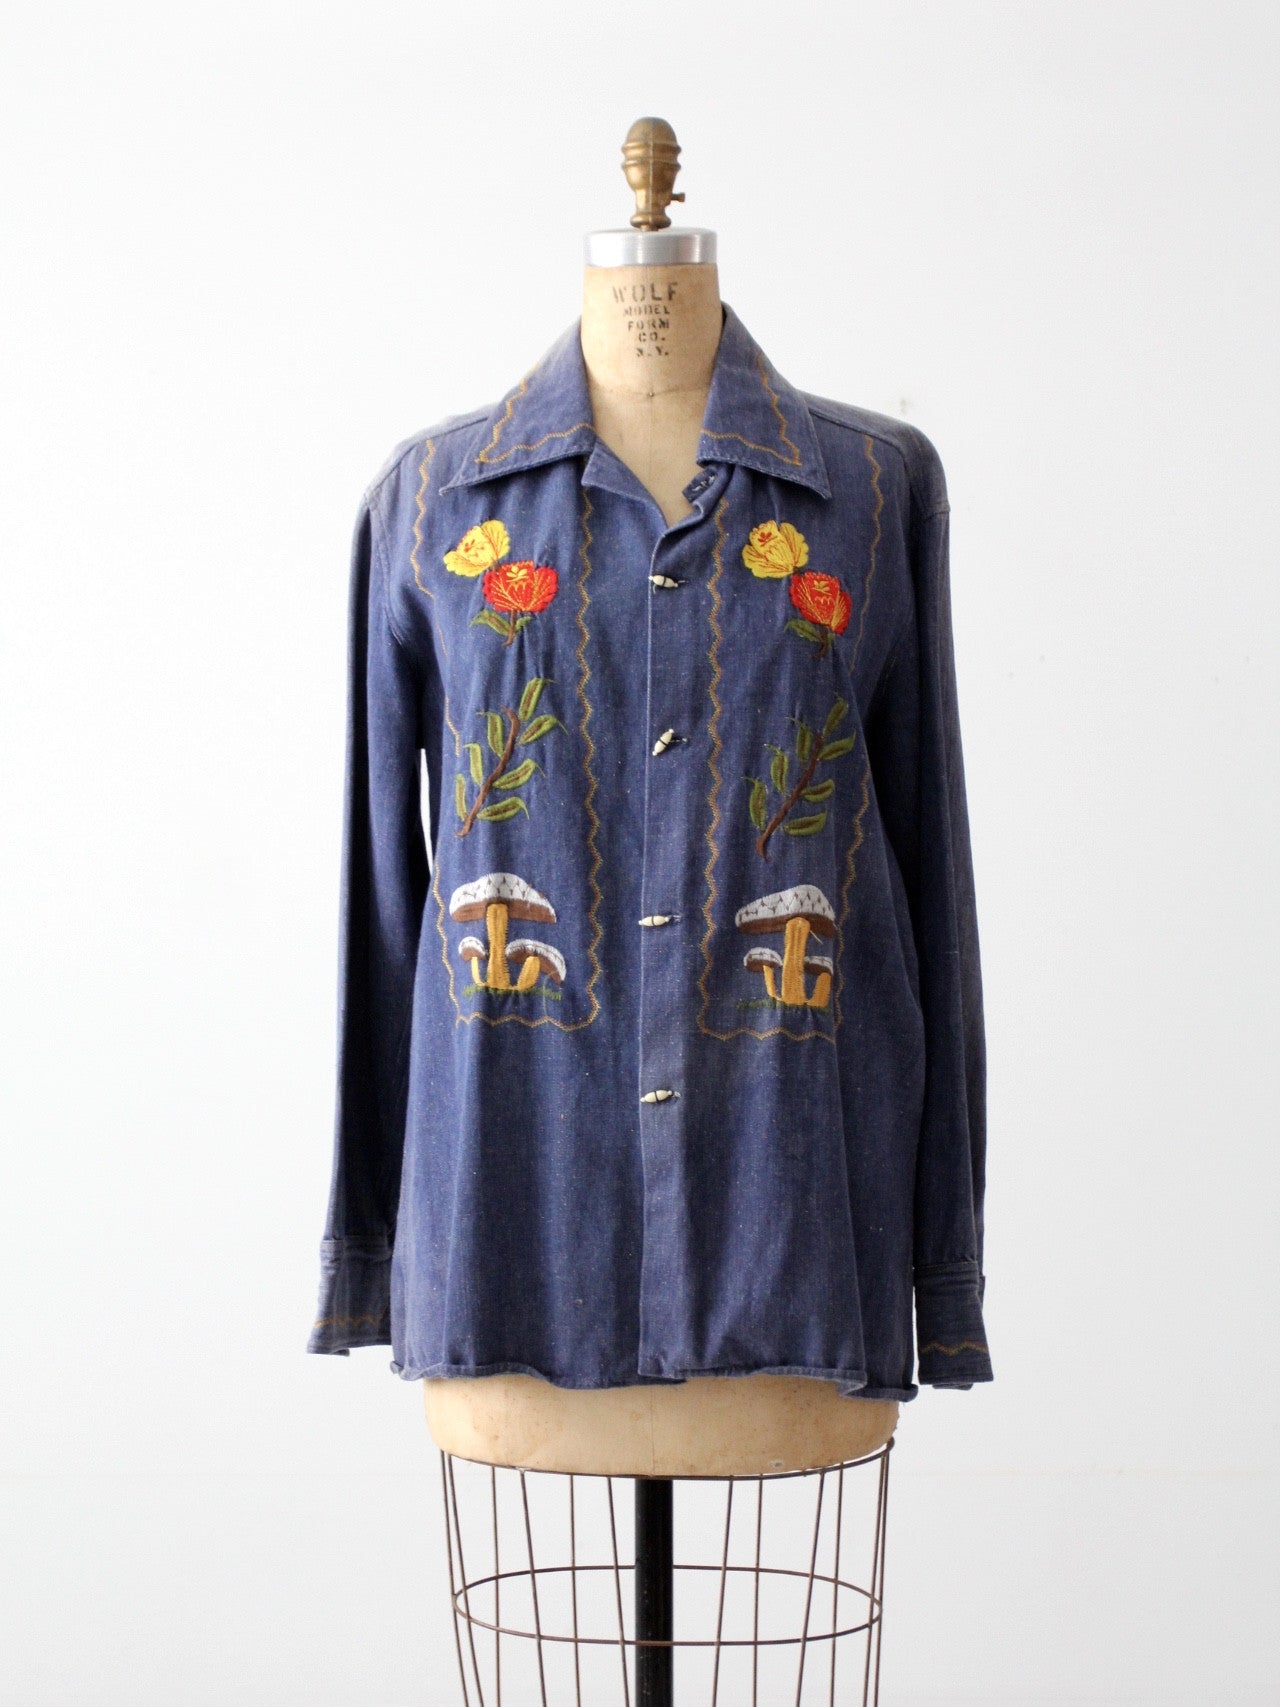 vintage 70s hippie denim shirt